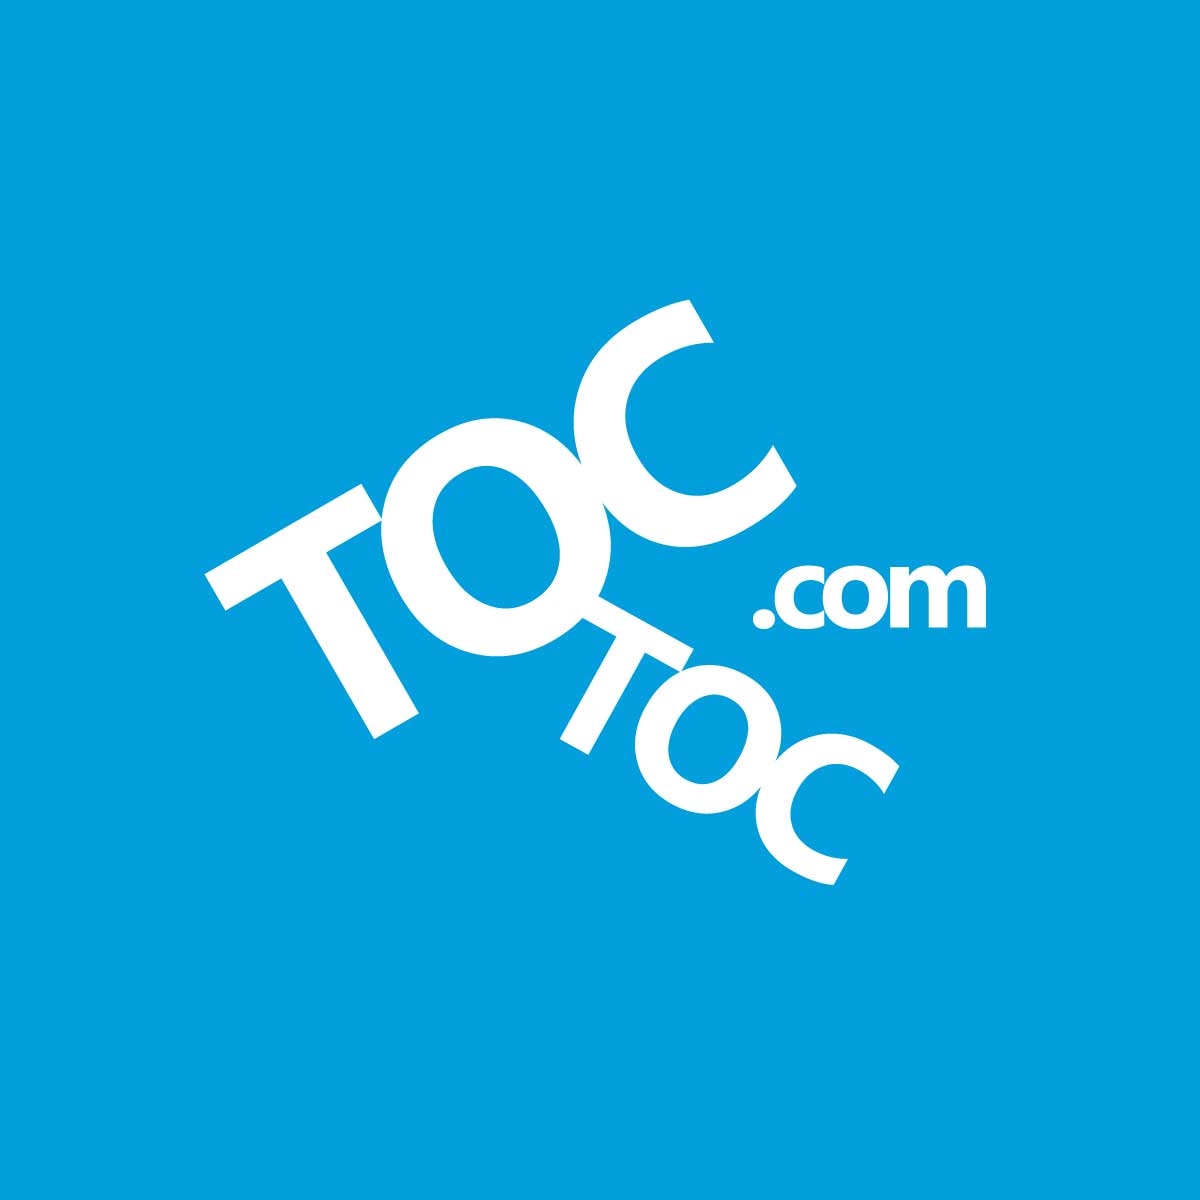 toc-toc-logo